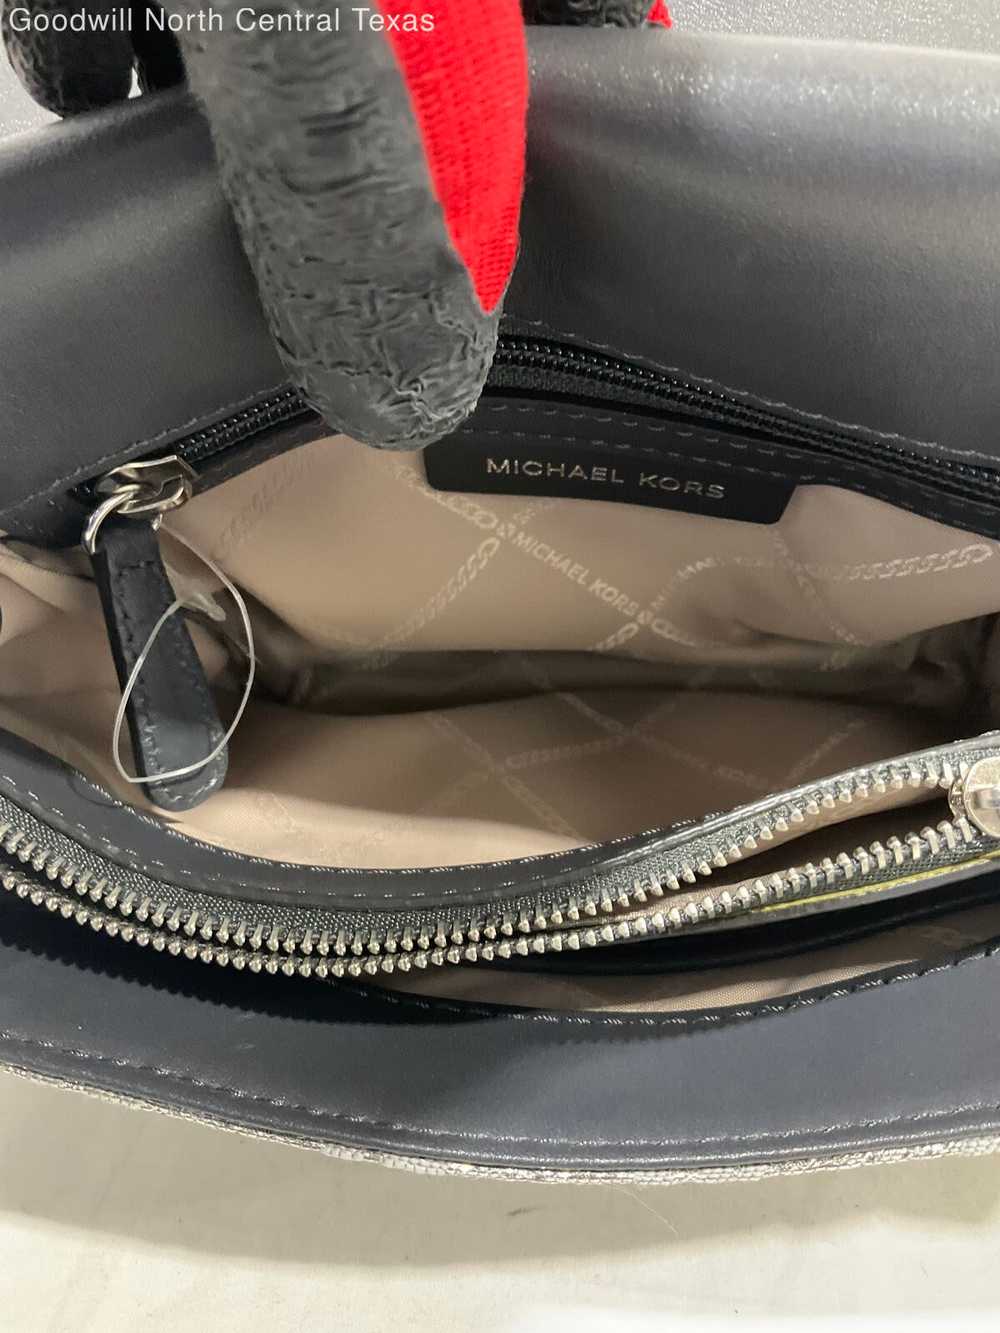 Michael Kors Designer Top Handle Bag - image 6